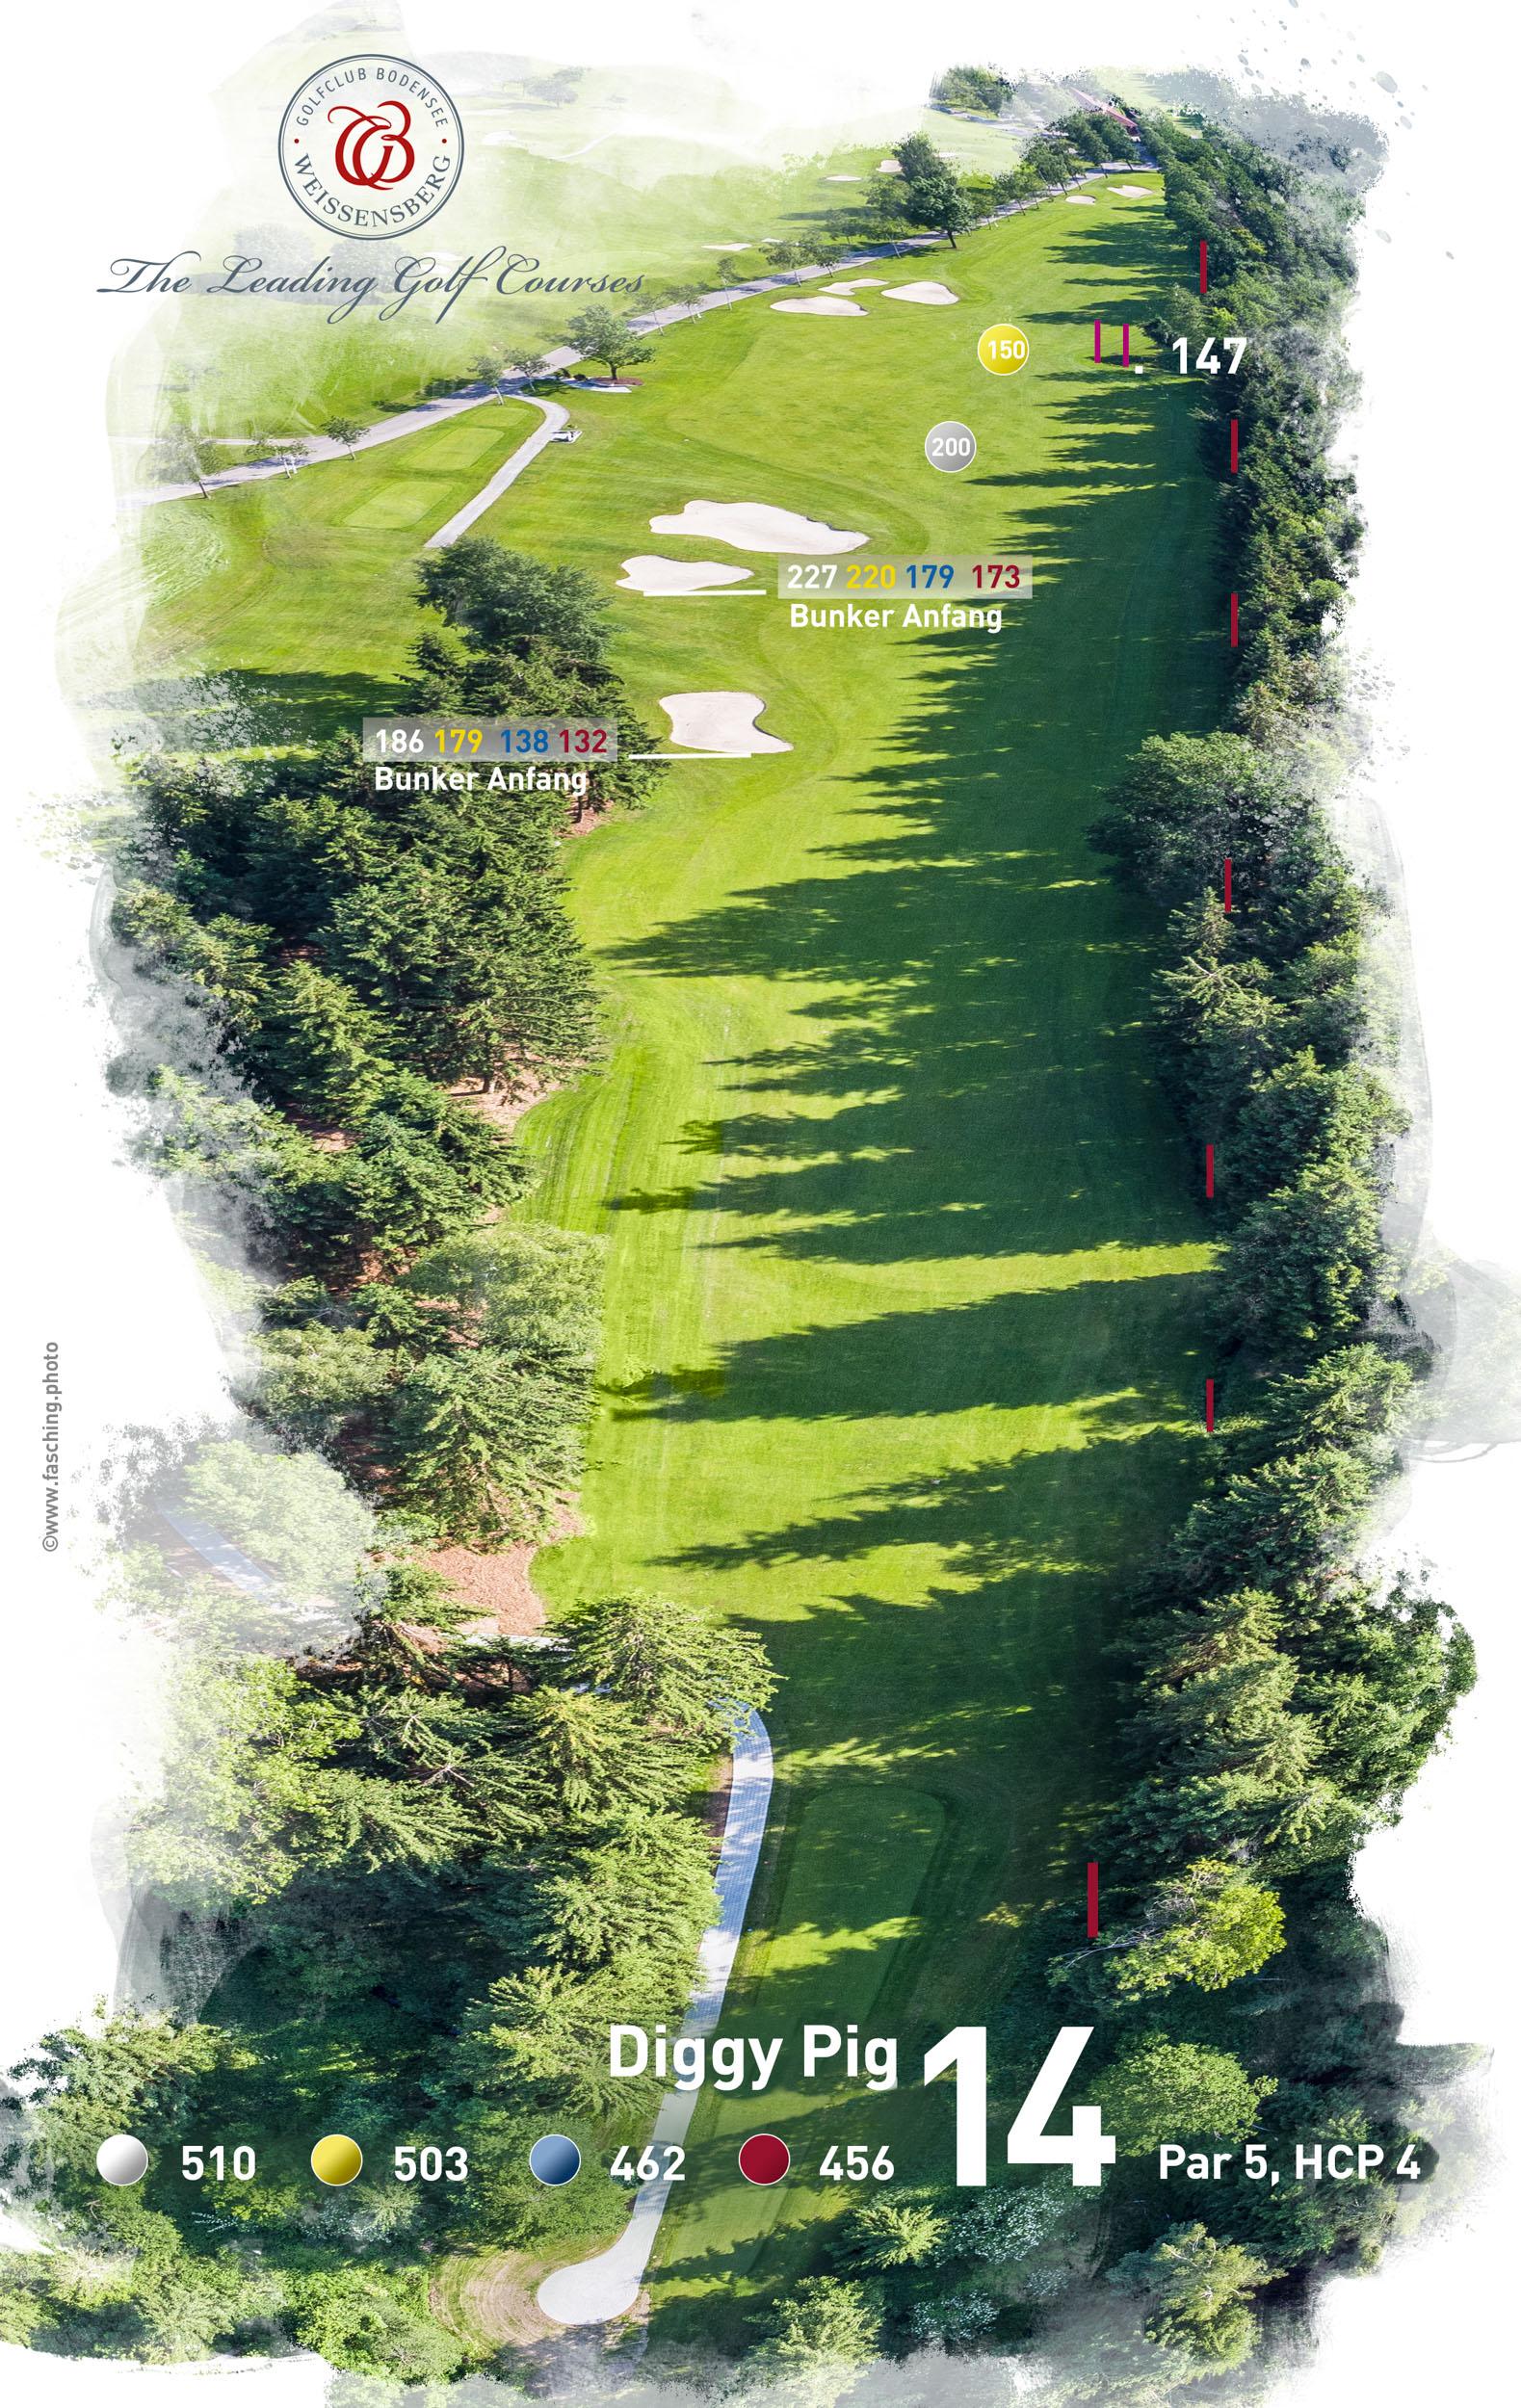 Diggy Pig, der Name der 14 Spielbahn im Golfclub Bodensee